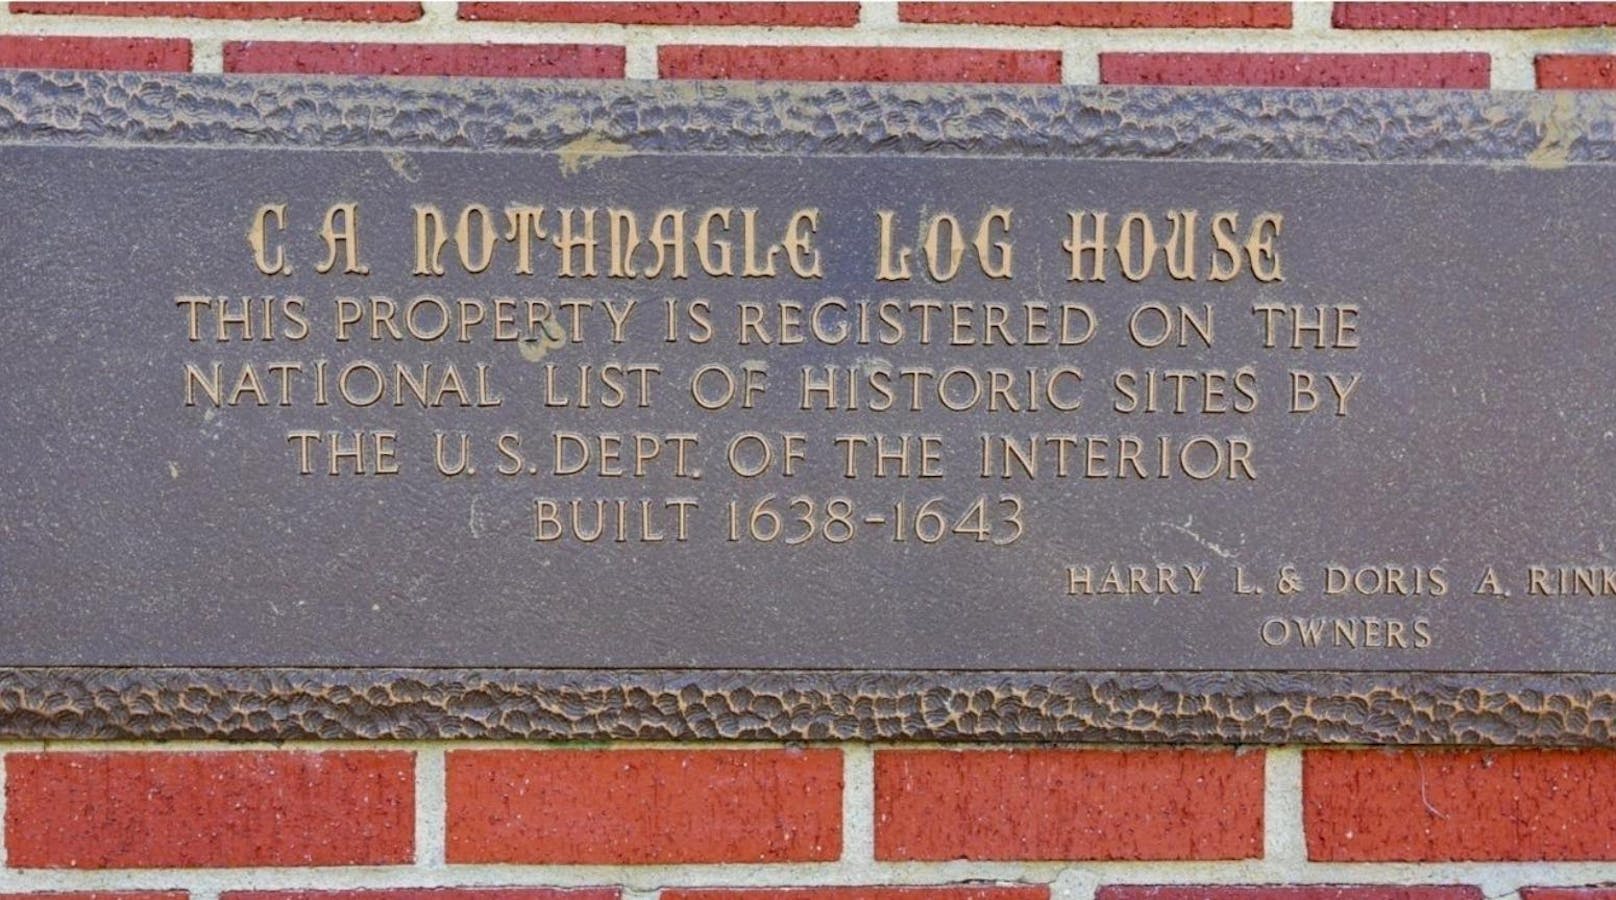 Damit ist es nicht nur die älteste Blockhütte (Log House) der Vereinigten Staaten, sondern auch die älteste ihrer Art in der westlichen Hemisphäre.